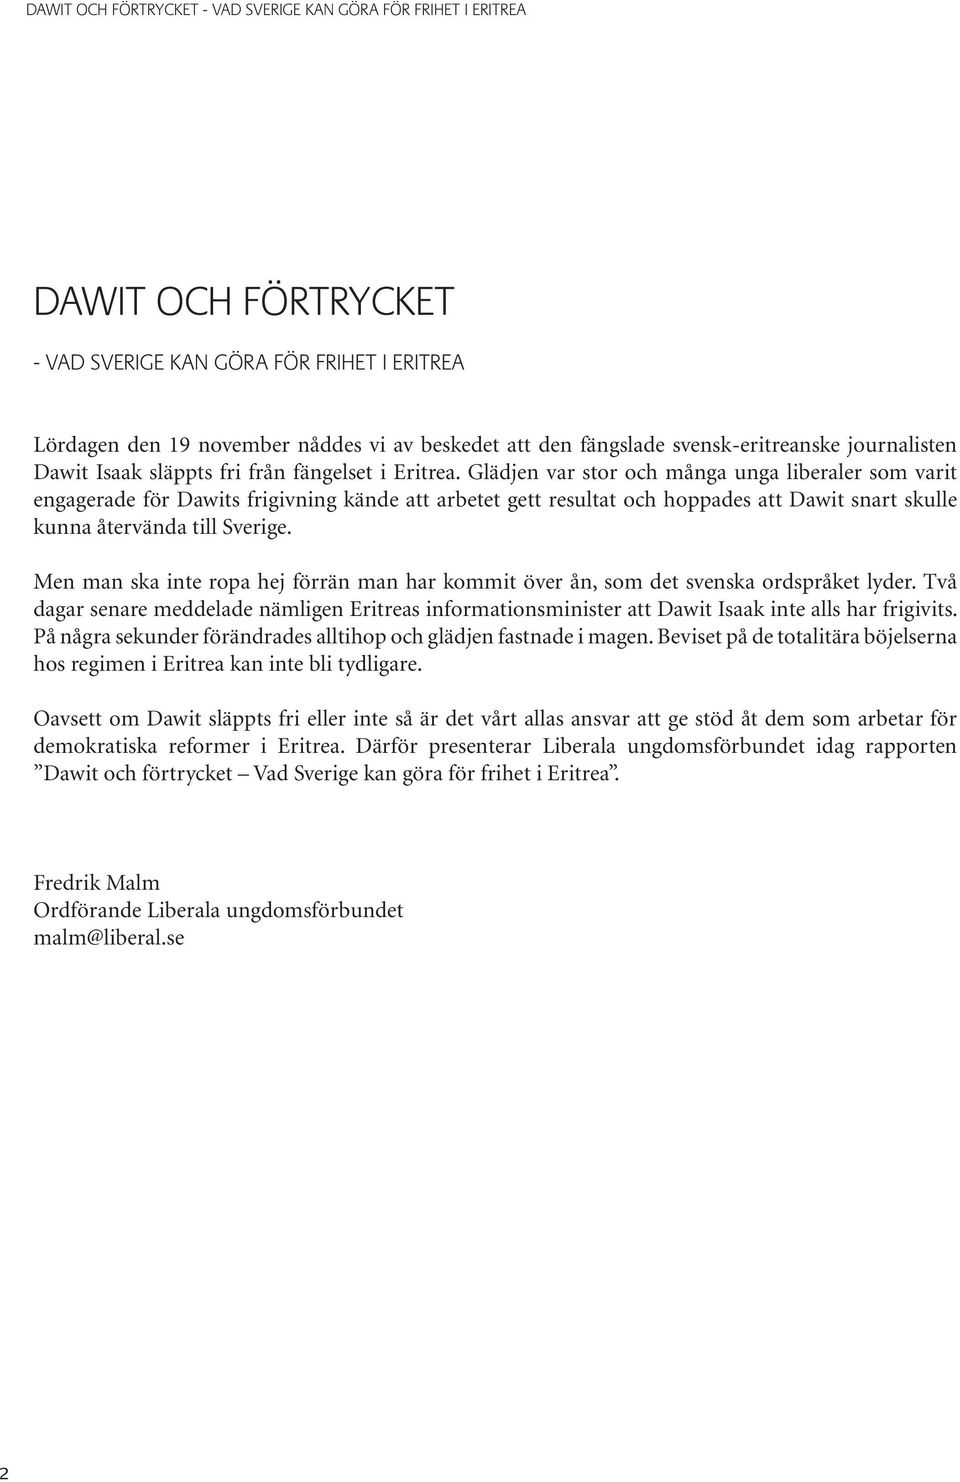 Glädjen var stor och många unga liberaler som varit engagerade för Dawits frigivning kände att arbetet gett resultat och hoppades att Dawit snart skulle kunna återvända till Sverige.